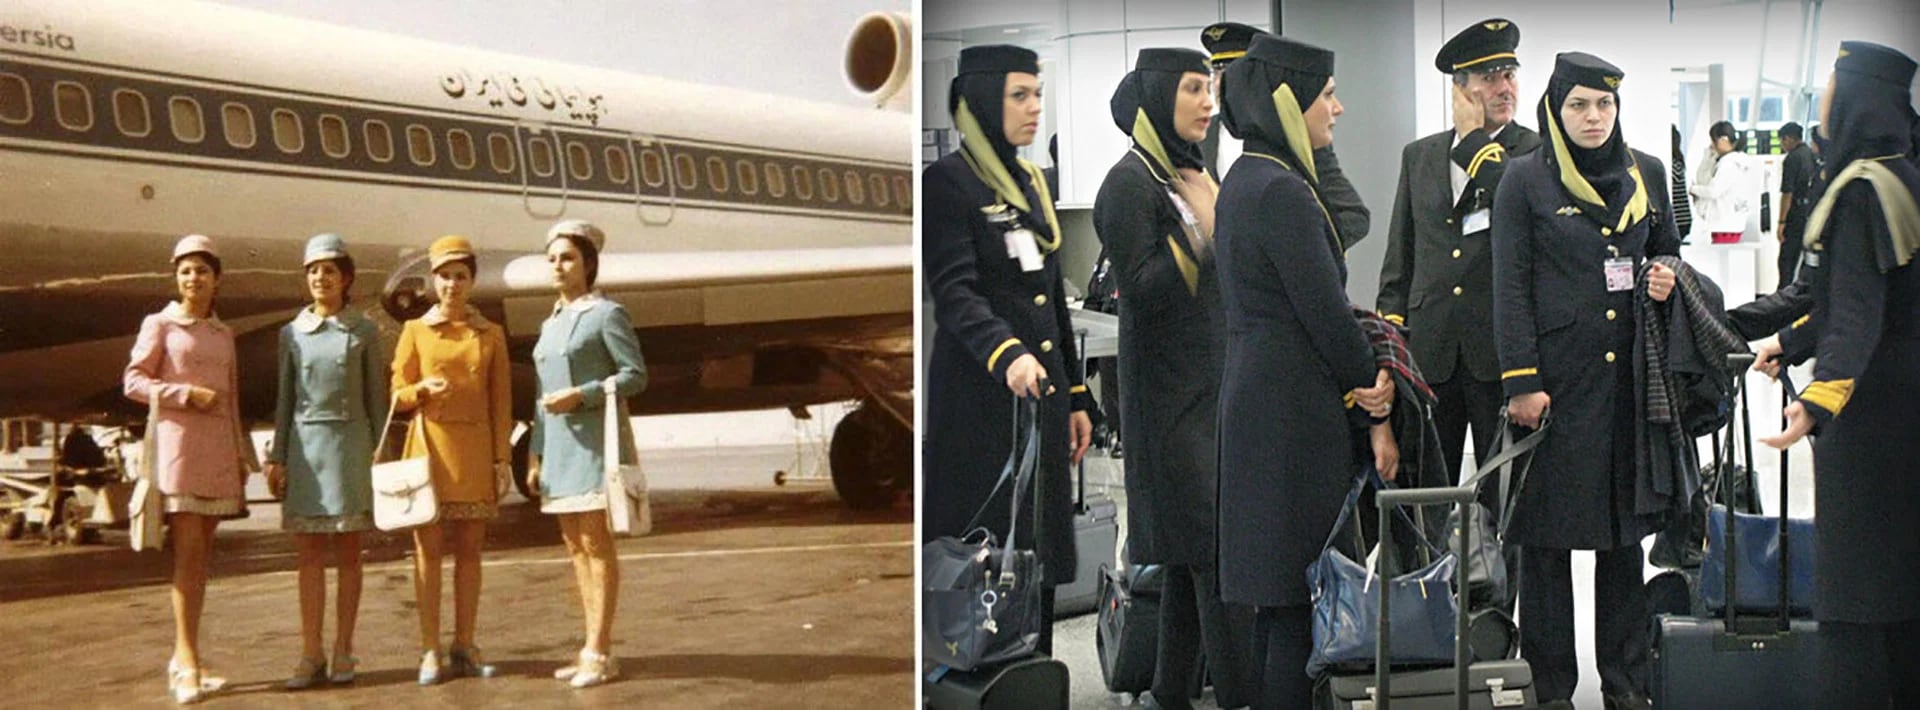 Los trajes de las azafatas en Irán, antes y después de la revolución de 1979